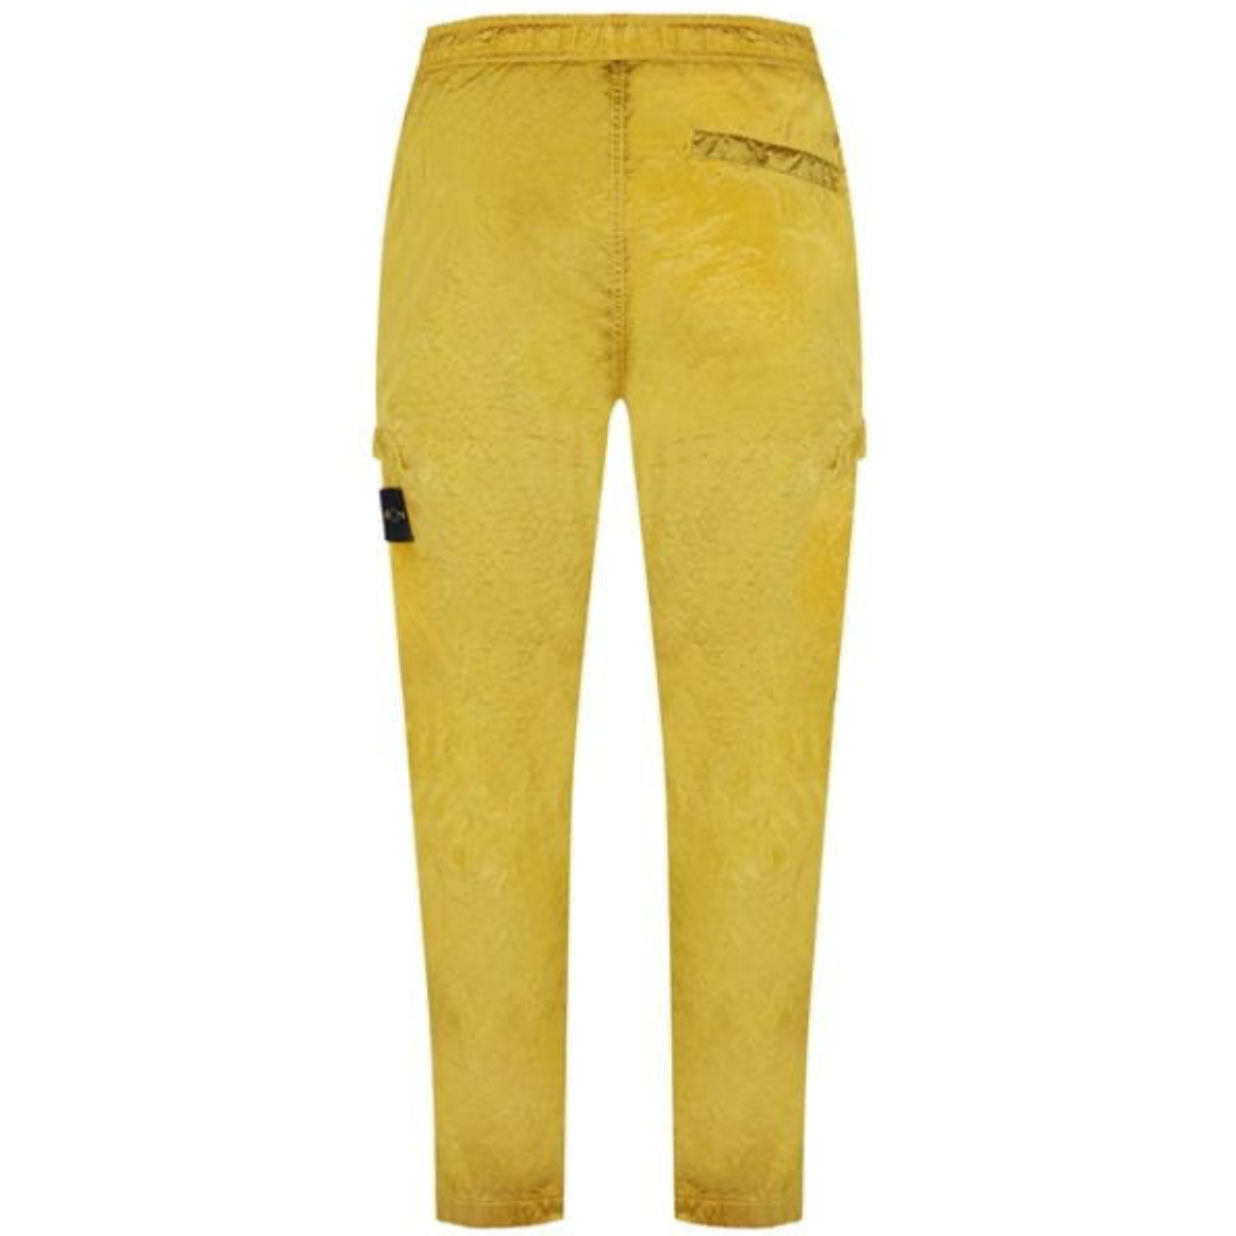 Stone Island Yellow Nylon Metal Cargo Pants - DANYOUNGUK